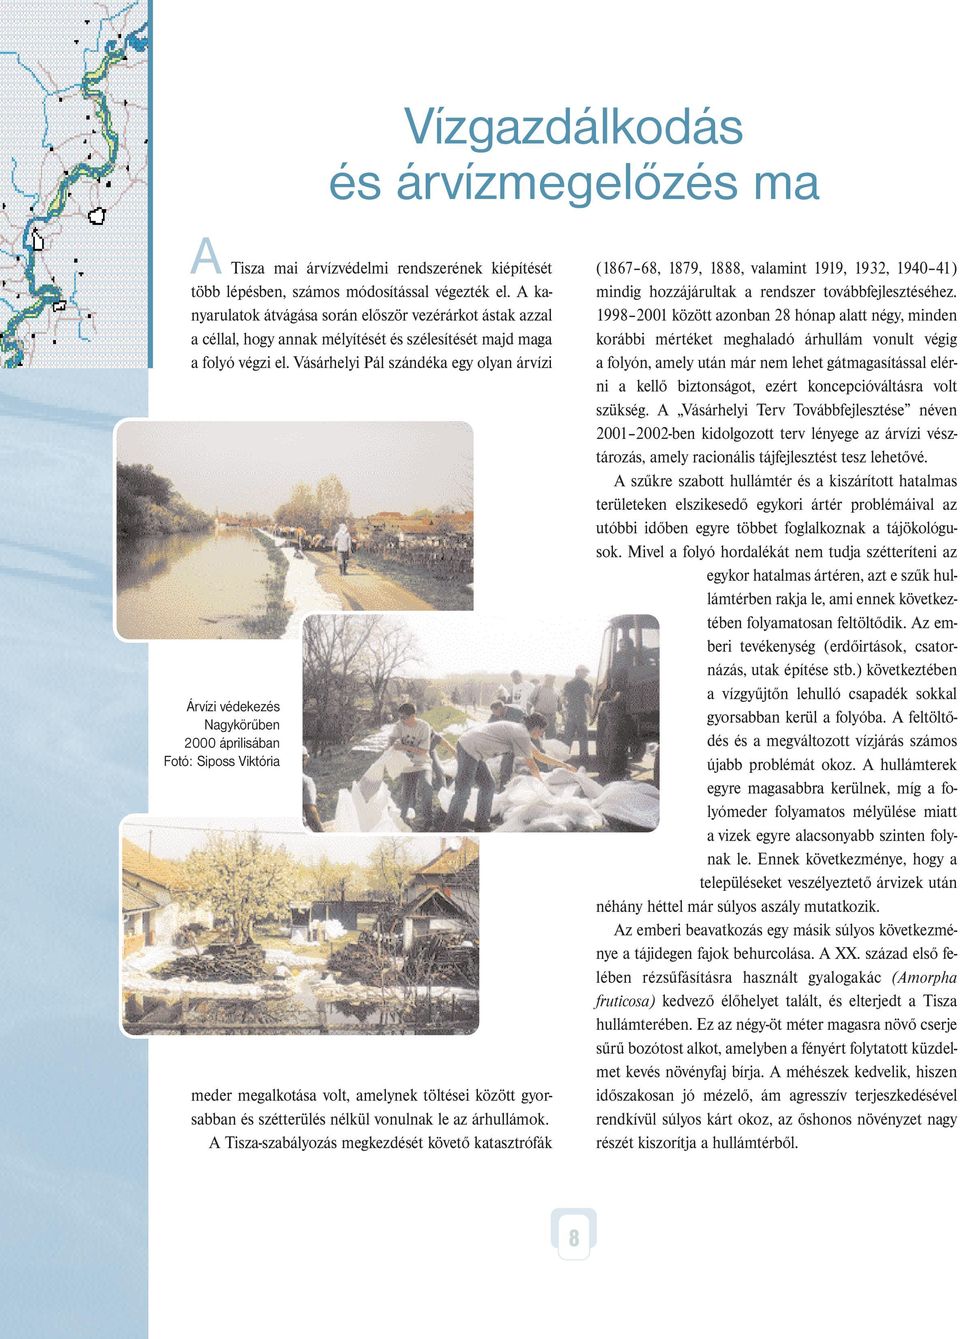 Vásárhelyi Pál szándéka egy olyan árvízi Árvízi védekezés Nagykörűben 2000 áprilisában Fotó: Siposs Viktória Vízgazdálkodás és árvízmegelőzés ma meder megalkotása volt, amelynek töltései között